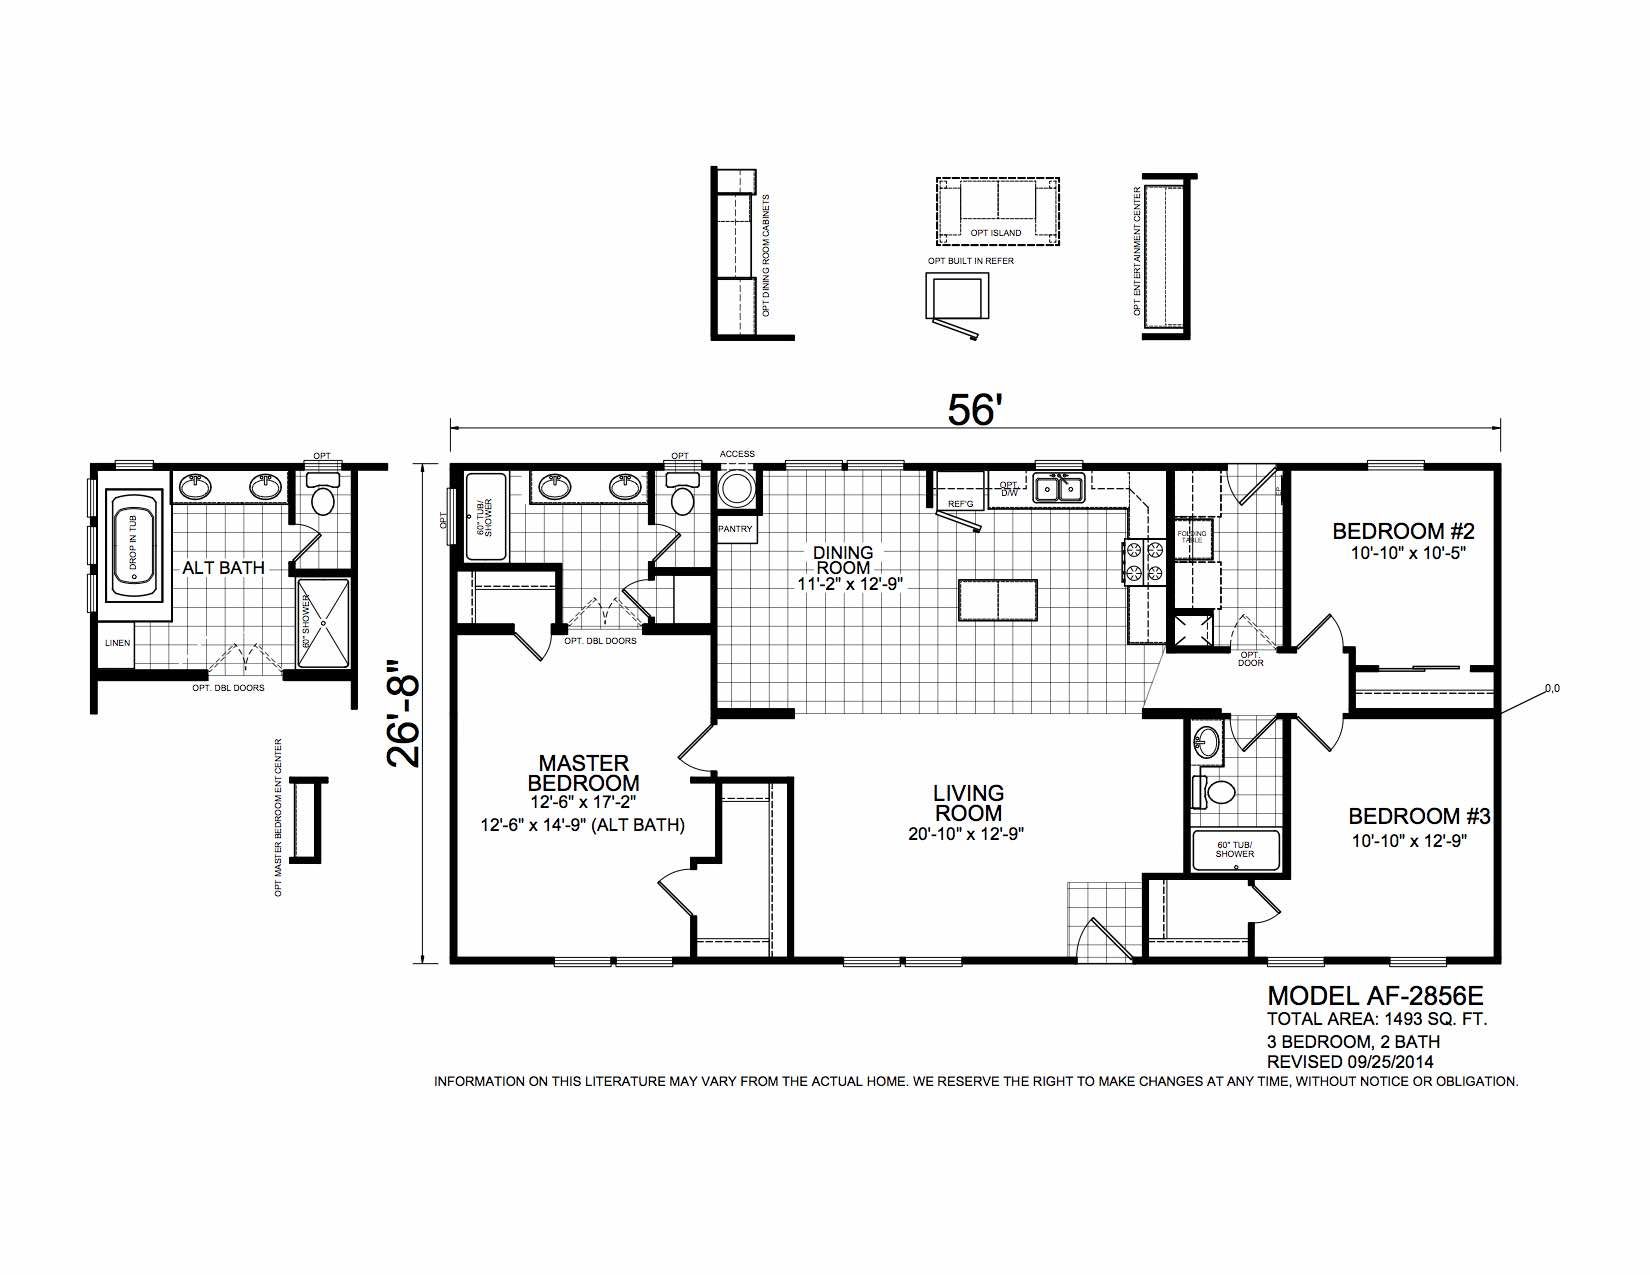 Homes Direct Modular Homes - Model AF2856E - Floorplan